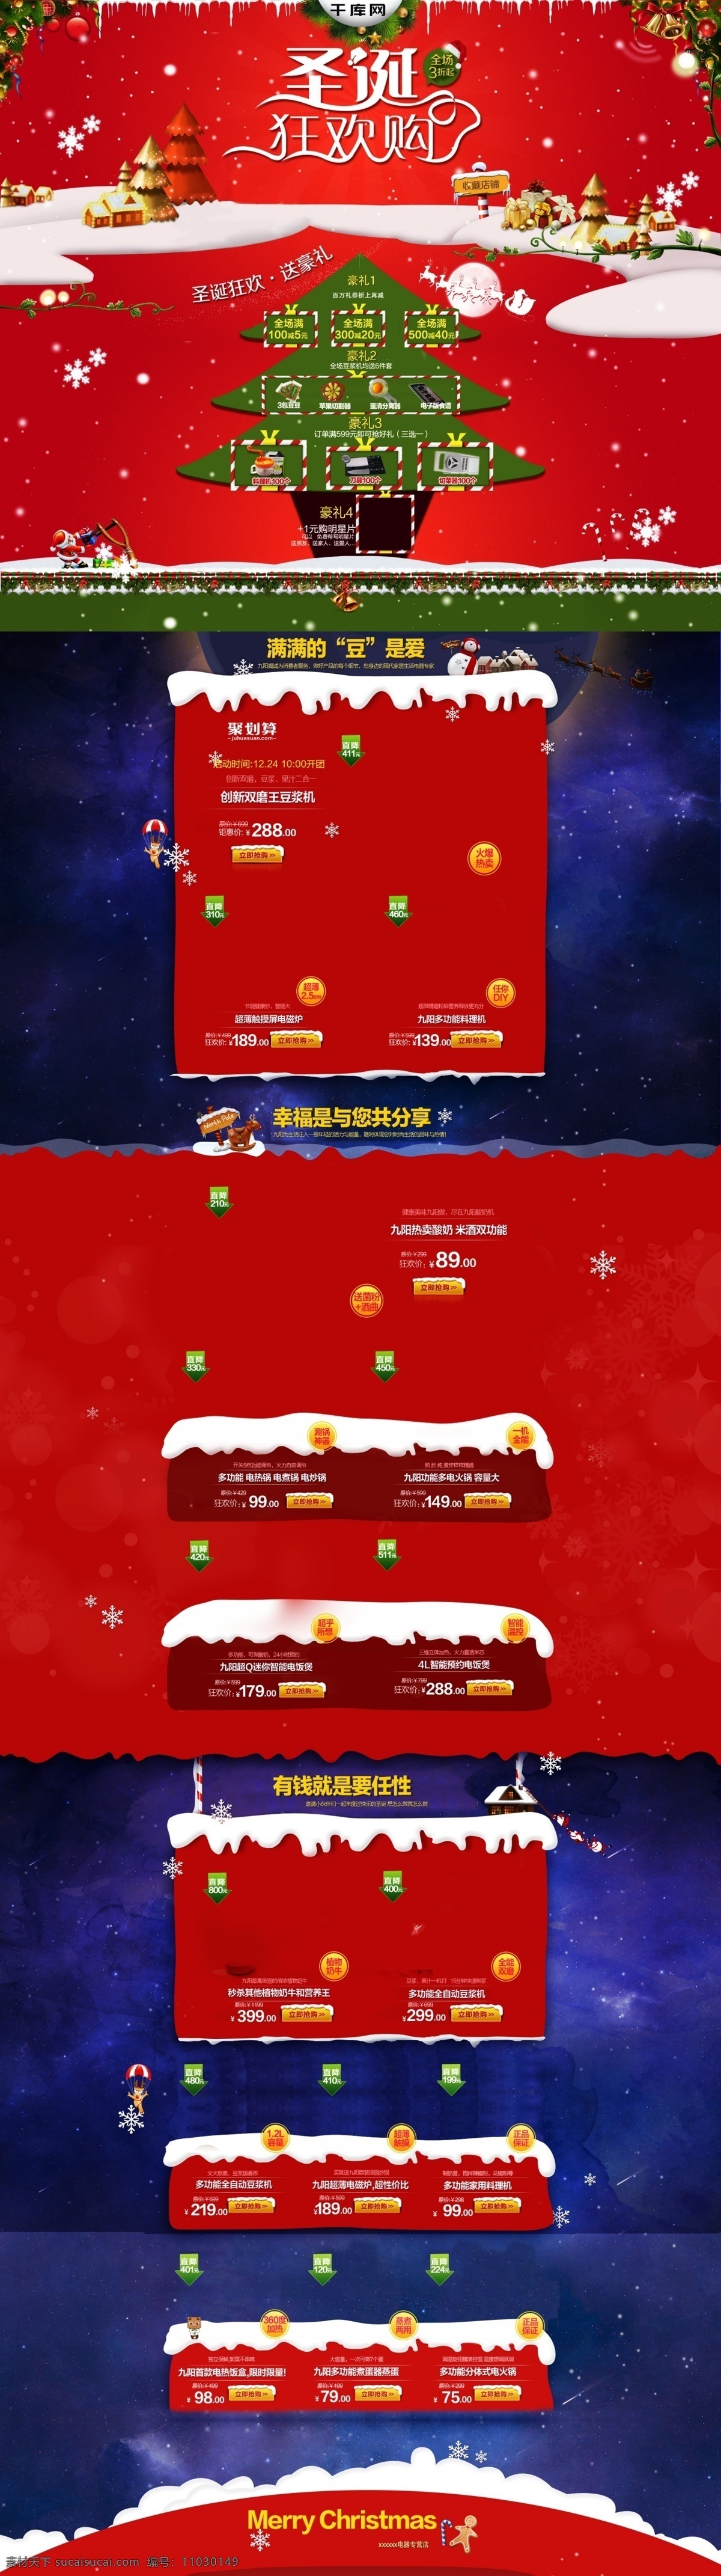 红 绿色 促销活动 圣诞节 狂欢 厨房电器 首页 模板 红色 小家电 首页模板 圣诞树 圣诞老人 天猫 淘宝